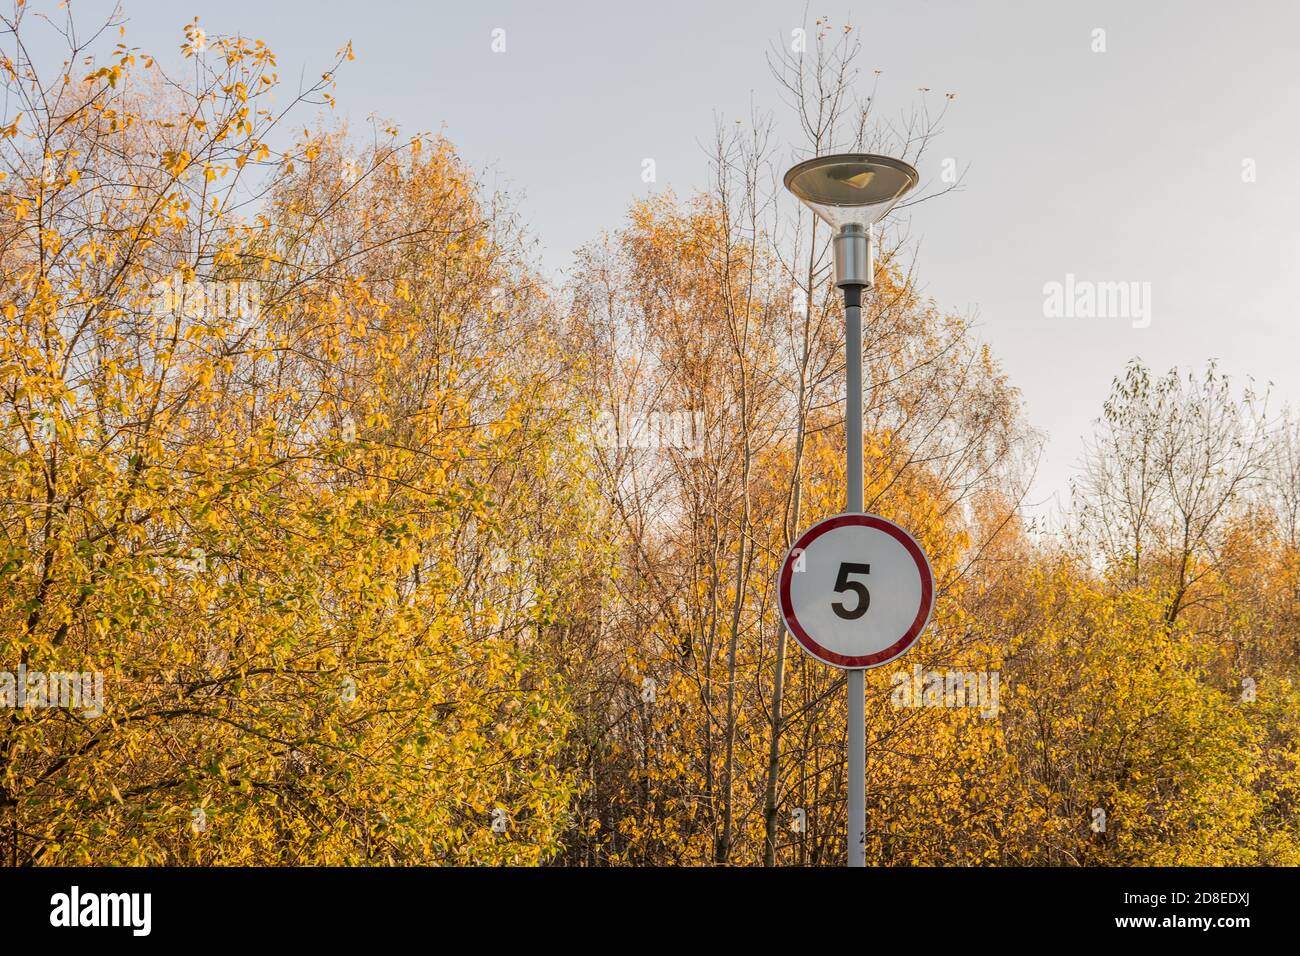 Straßenschild in der Nähe einer Laterne auf dem Hintergrund eines Herbstes gelben Waldkreis rot Geschwindigkeit 5, Herbstwiese, grünes Gras helles Sonnenlicht Asphaltstraße in Stockfoto